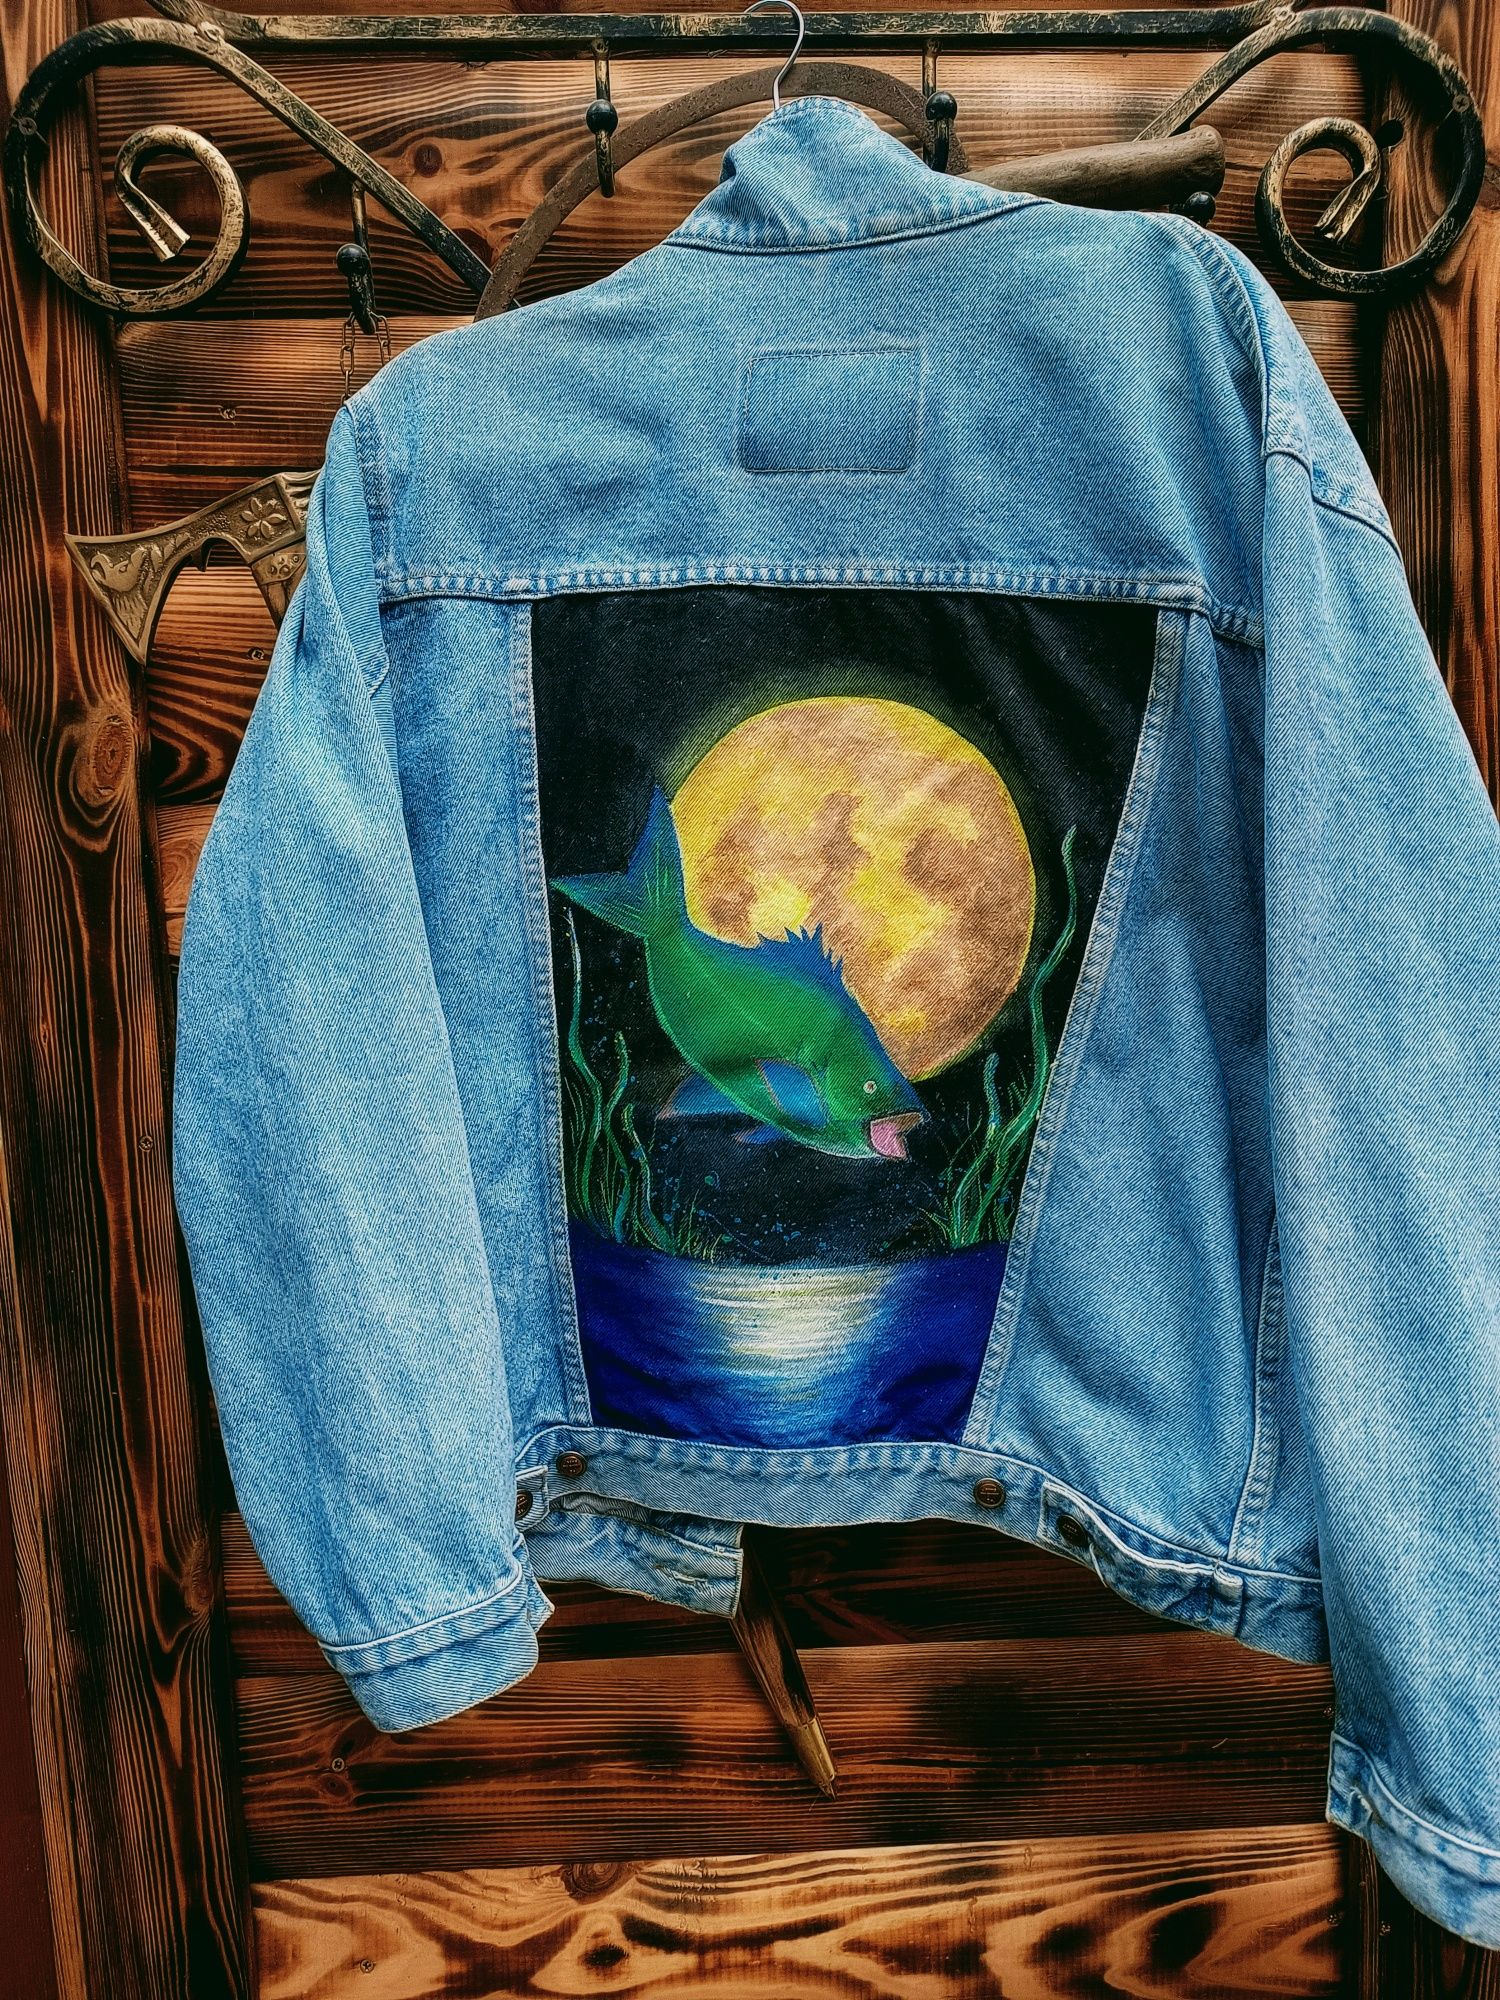 Kurtka jeansowa, malowanie na kurtkach